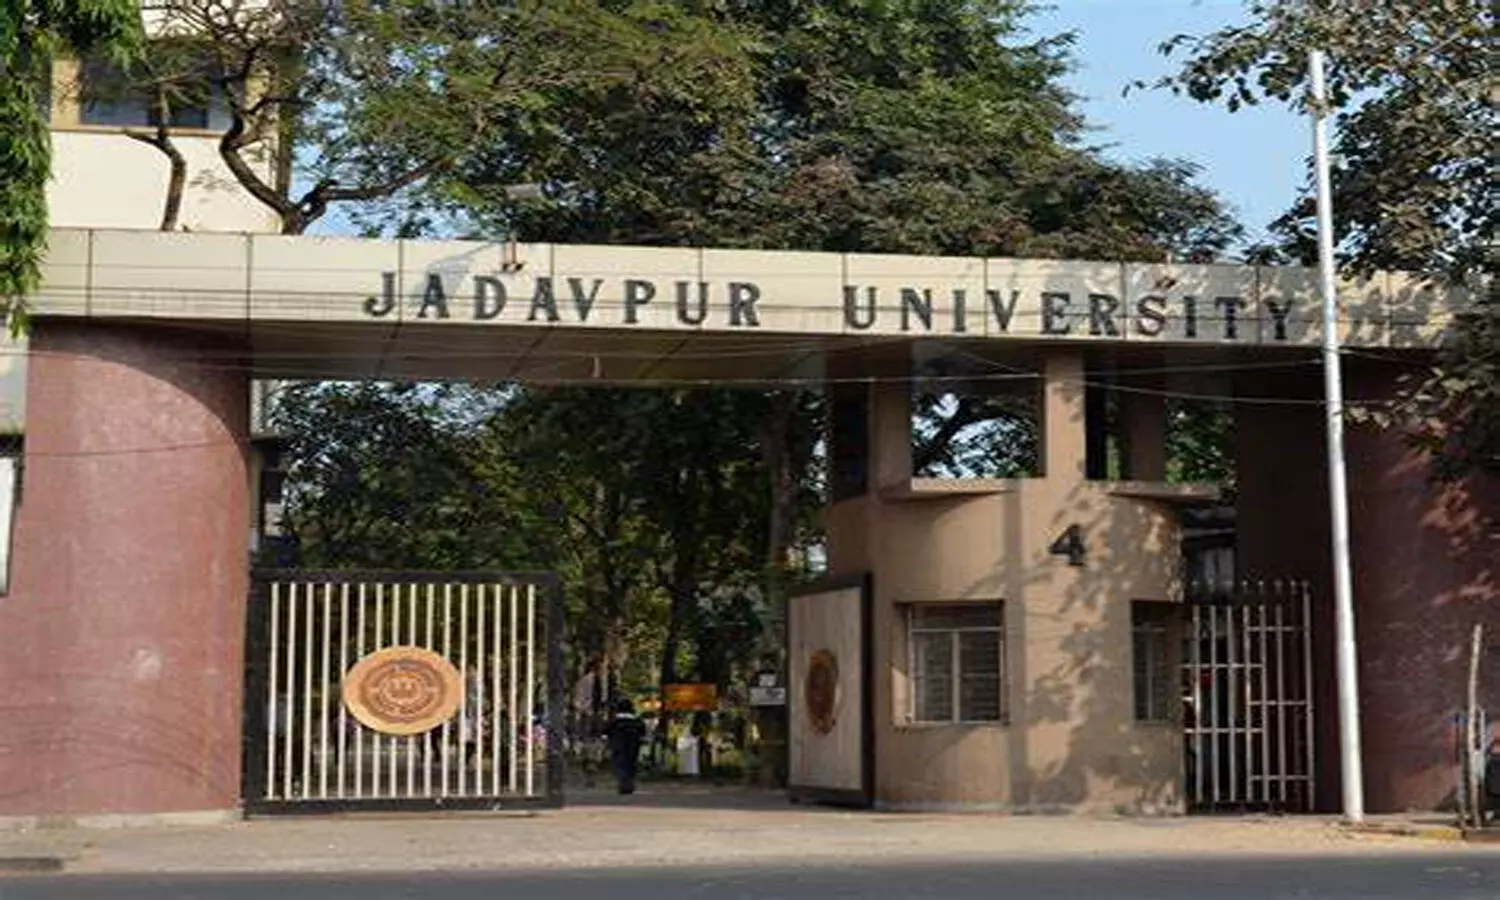 JU Student Death: जादवपुर विश्वविद्यालय के प्रो. बुद्धदेव साय बने नए कुलपति, राज्यपाल सीवी बोस ने की नियुक्ति